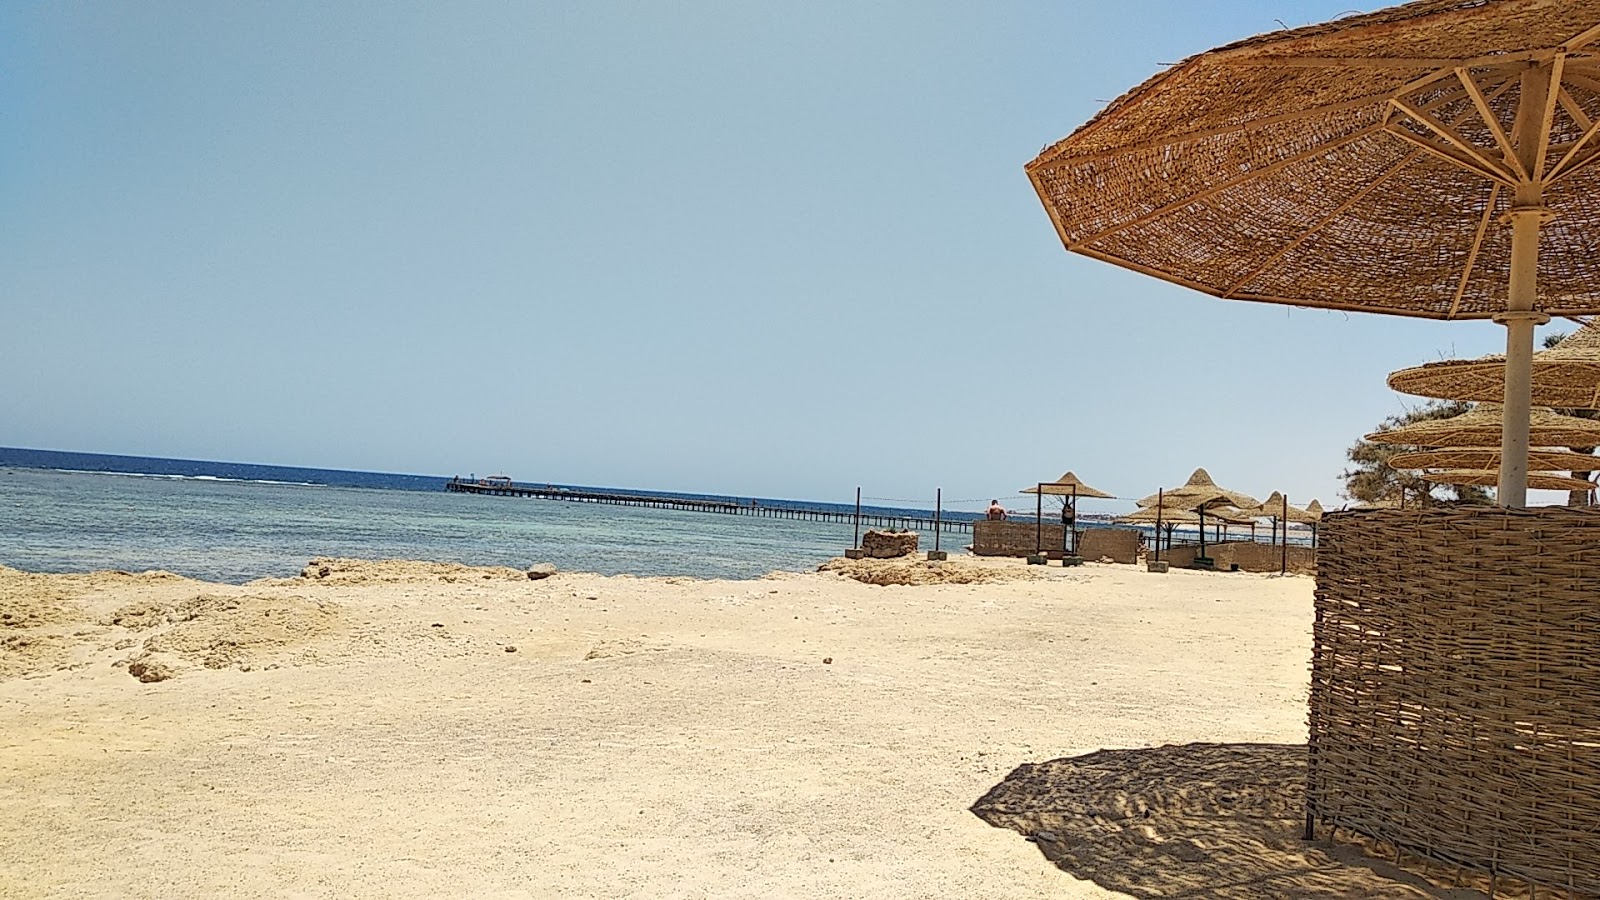 Fotografie cu Flamenco Beach & Resort - locul popular printre cunoscătorii de relaxare